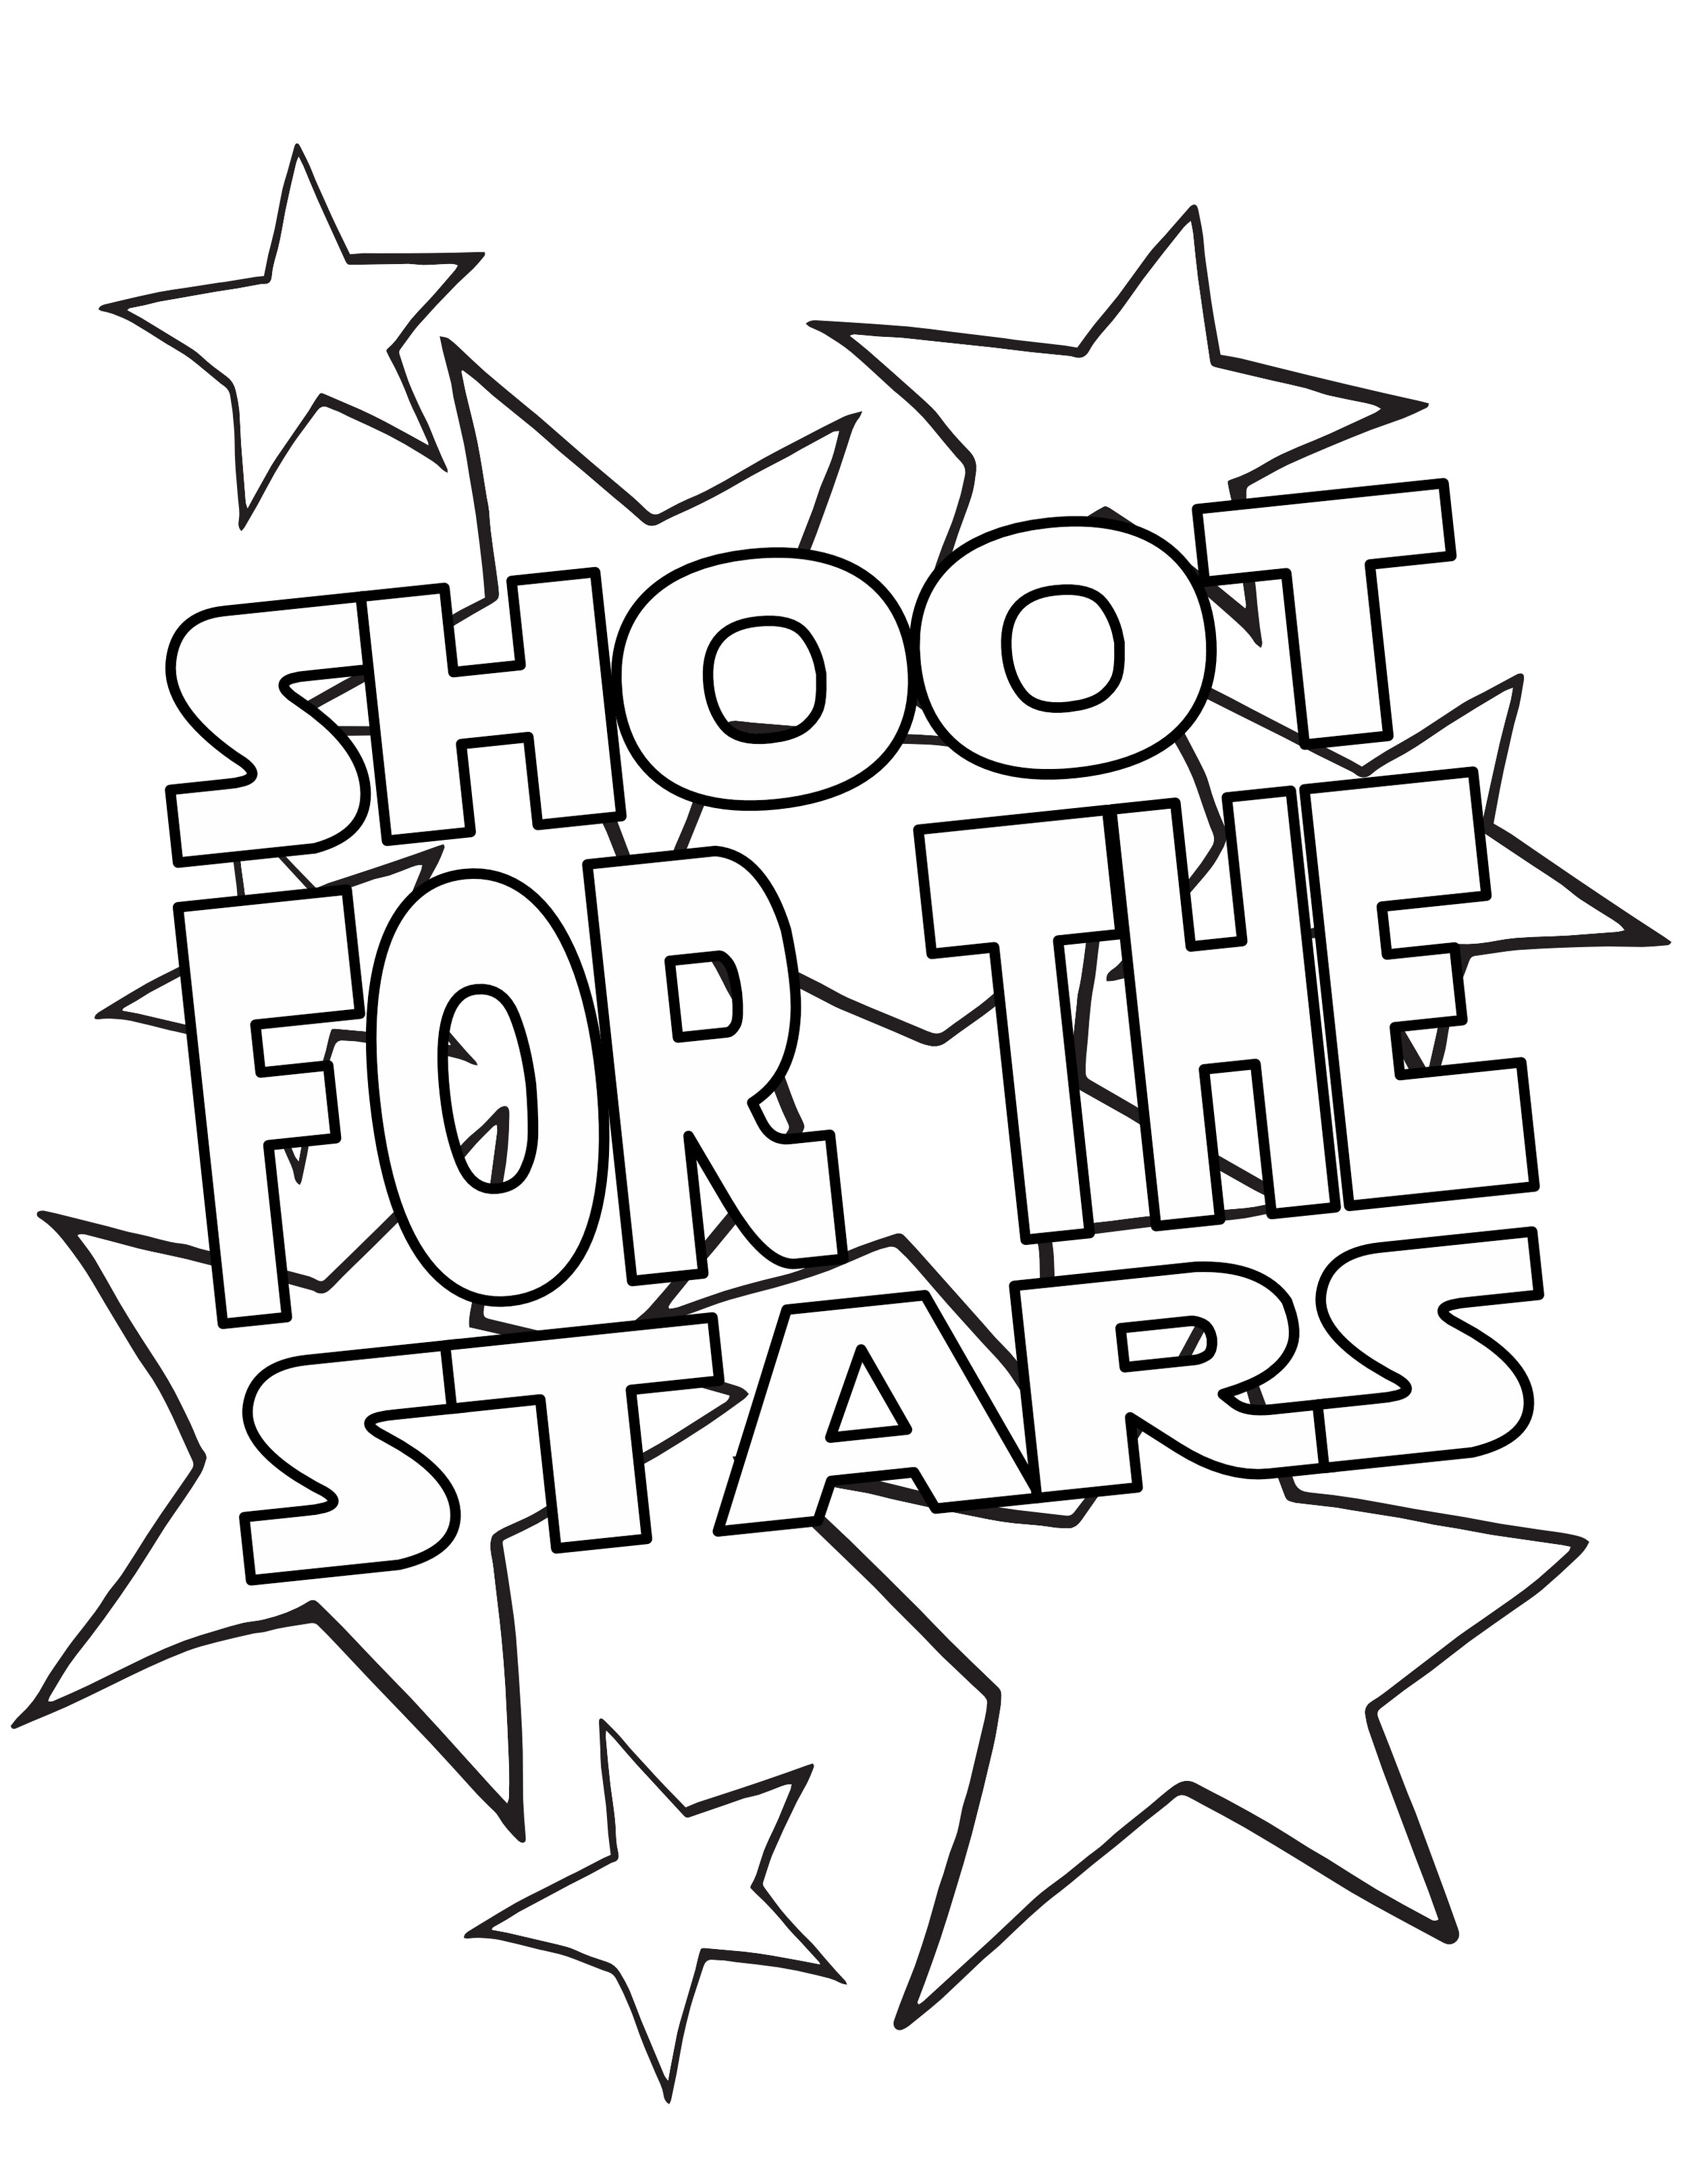 shoot for the stars on stars.stevie doodles.jpg